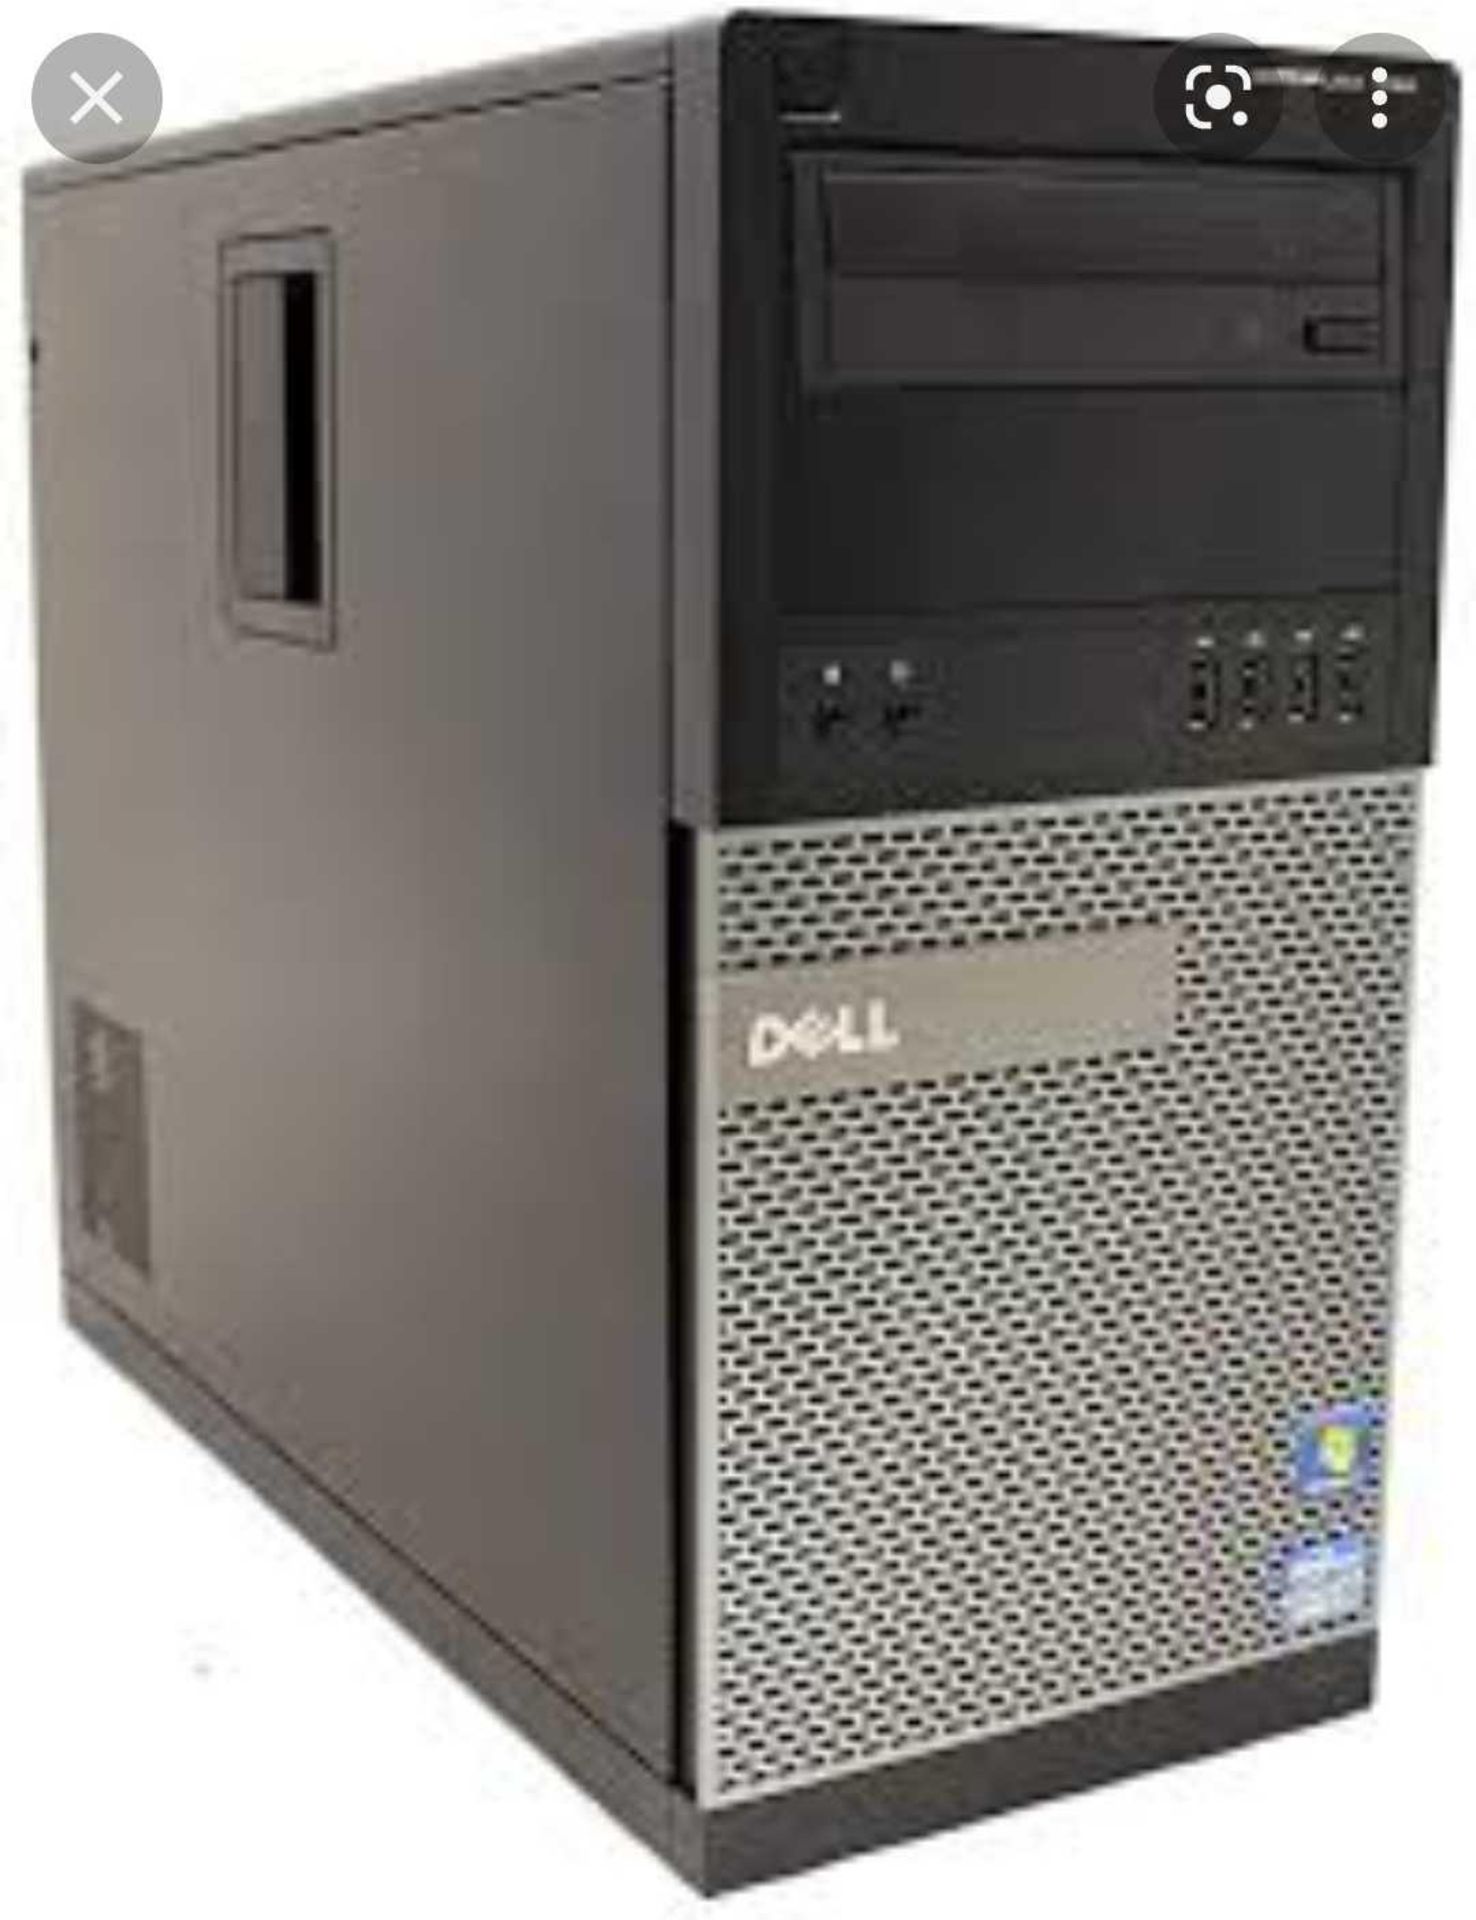 RRP £185 Dell Desktop Pc Qlf-00572